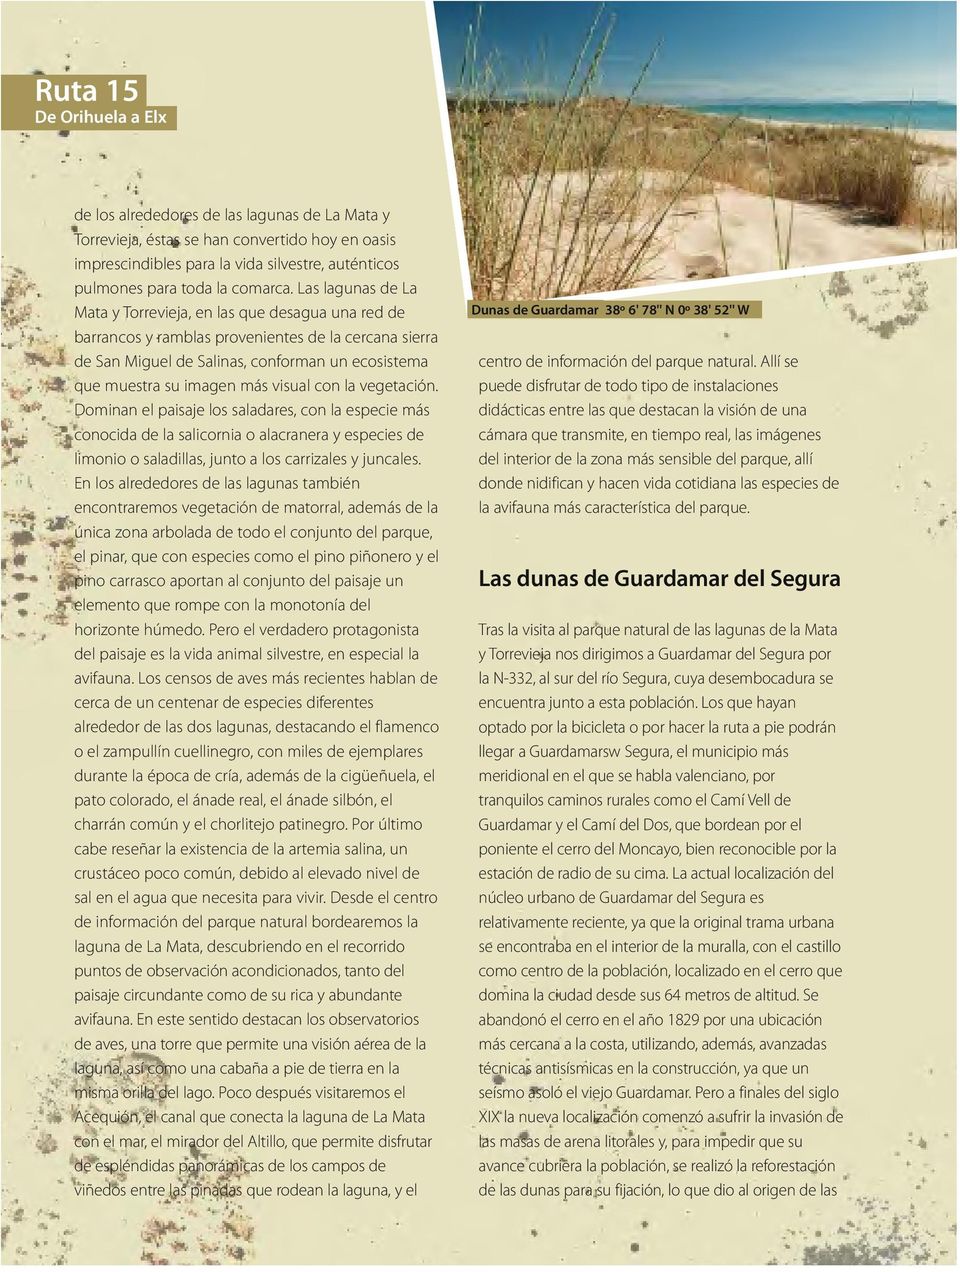 Las lagunas de La Mata y Torrevieja, en las que desagua una red de barrancos y ramblas provenientes de la cercana sierra de San Miguel de Salinas, conforman un ecosistema que muestra su imagen más